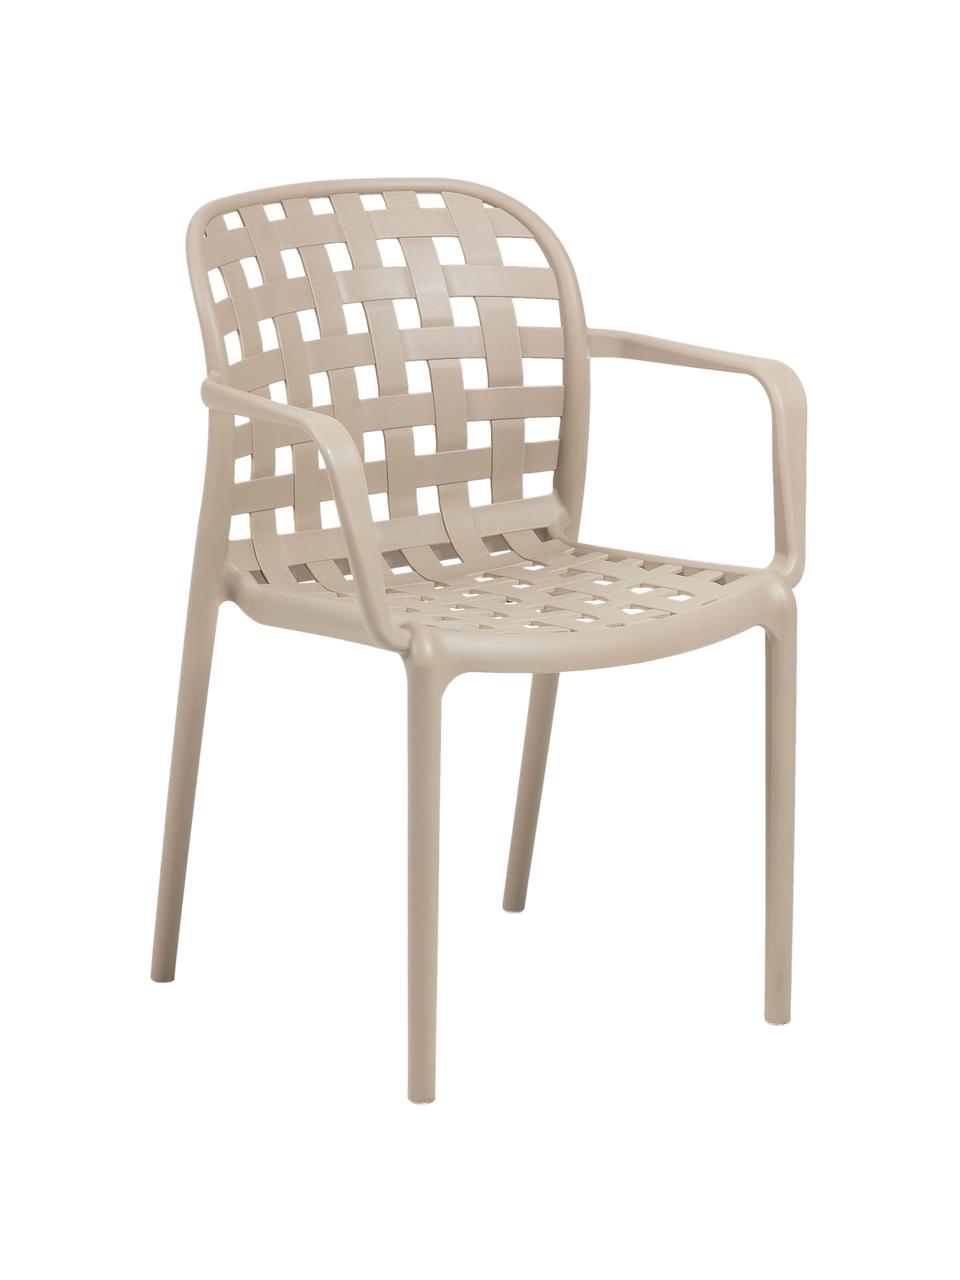 Krzesło ogrodowe składane z tworzywa sztucznego Isa, 2 szt., Tworzywo sztuczne, Beżowy, S 58 x G 58 cm